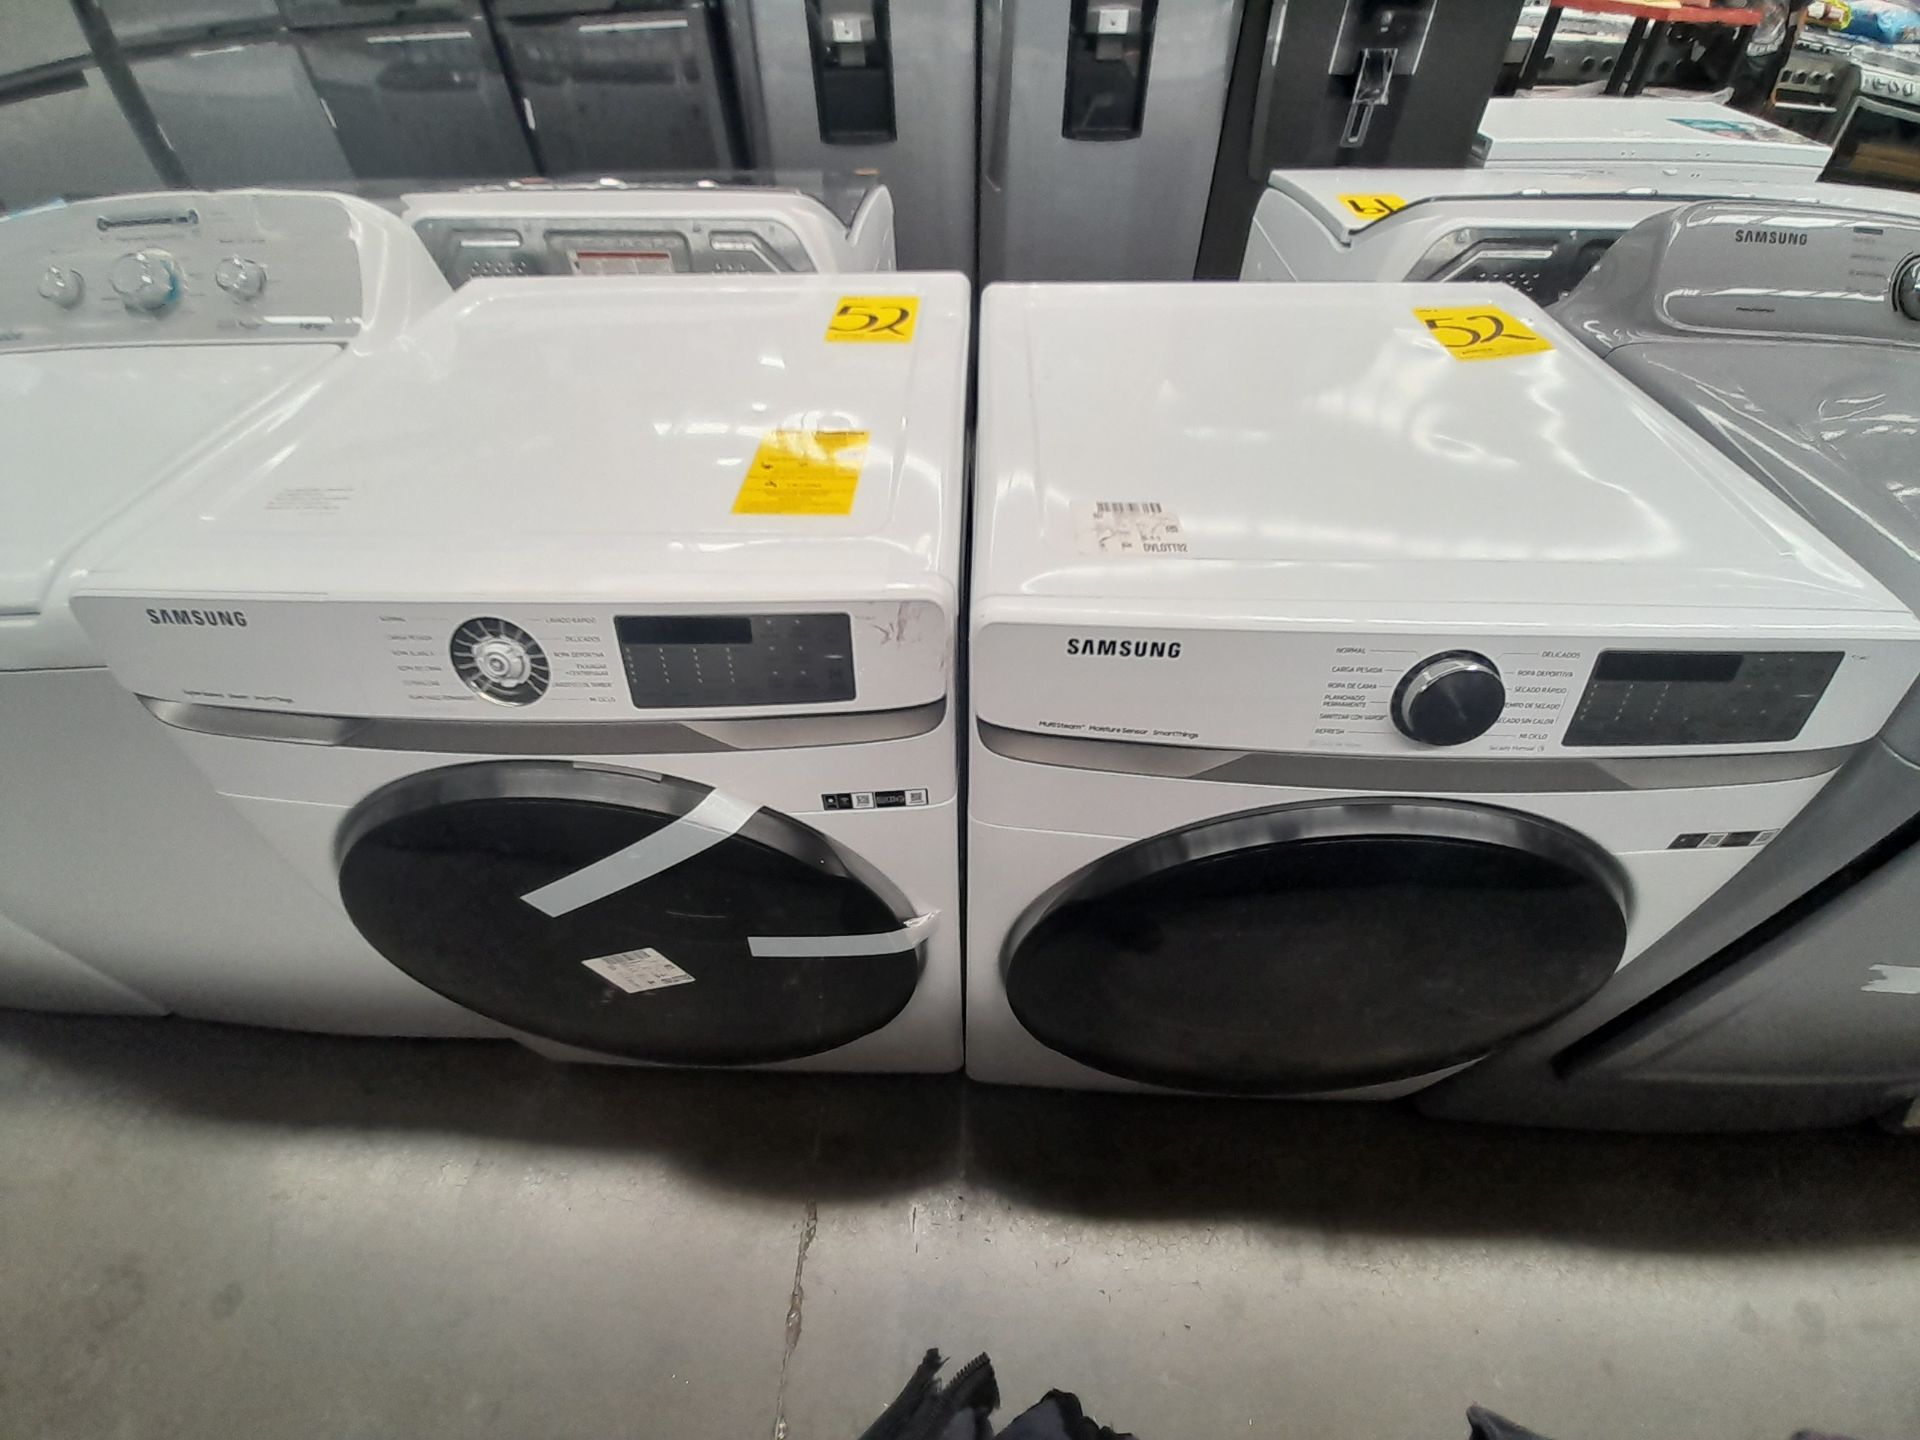 Lote de 1 lavadora y 1 Secadora contiene: 1 lavadora de 22 KG, Marca SAMSUNG, Modelo WF22R6270AV, S